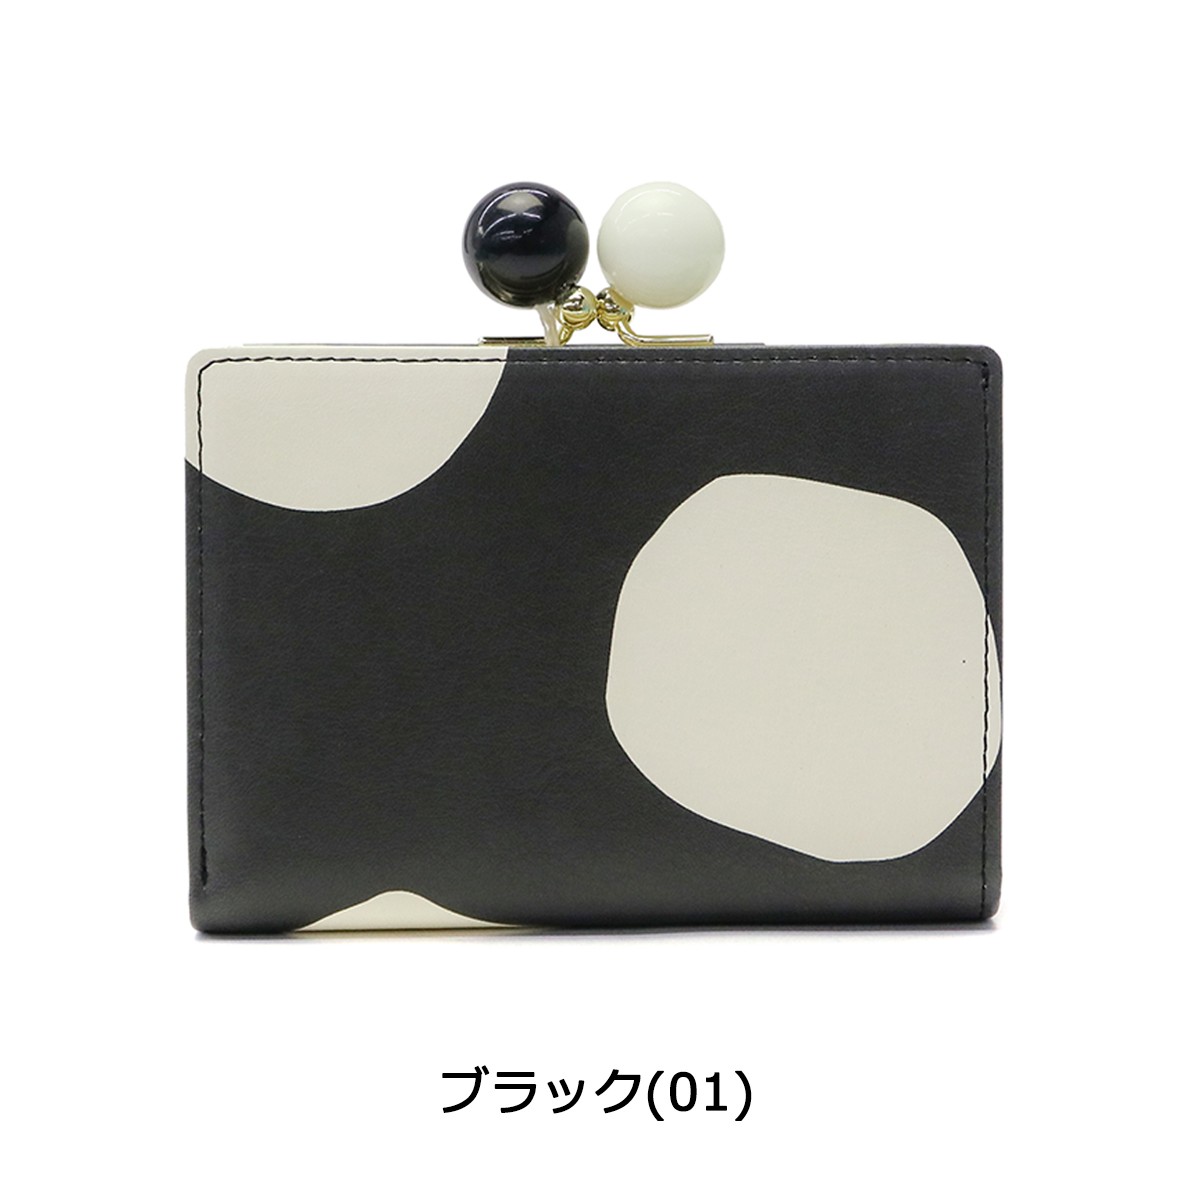 ツモリチサト 財布 tsumori chisato carry 二つ折り財布 がま口 レディース ズームドット 57301